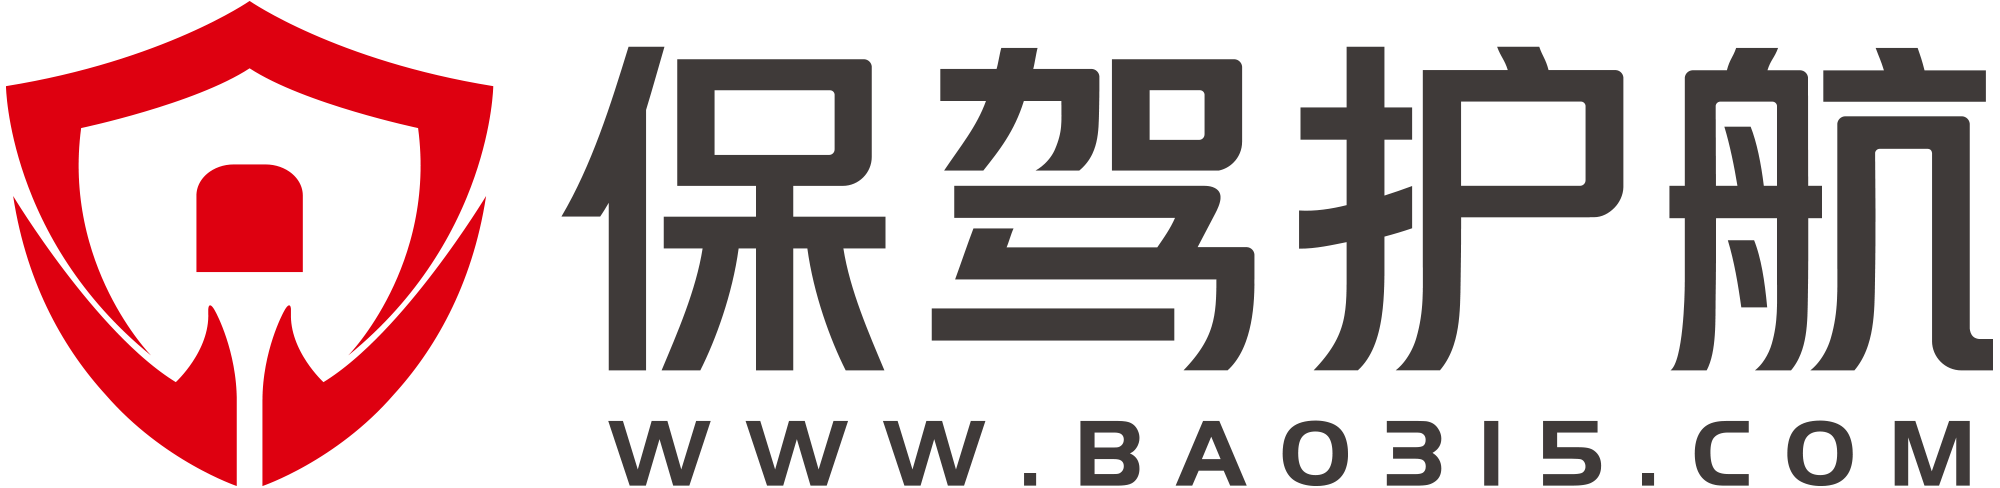 bao315.com icon